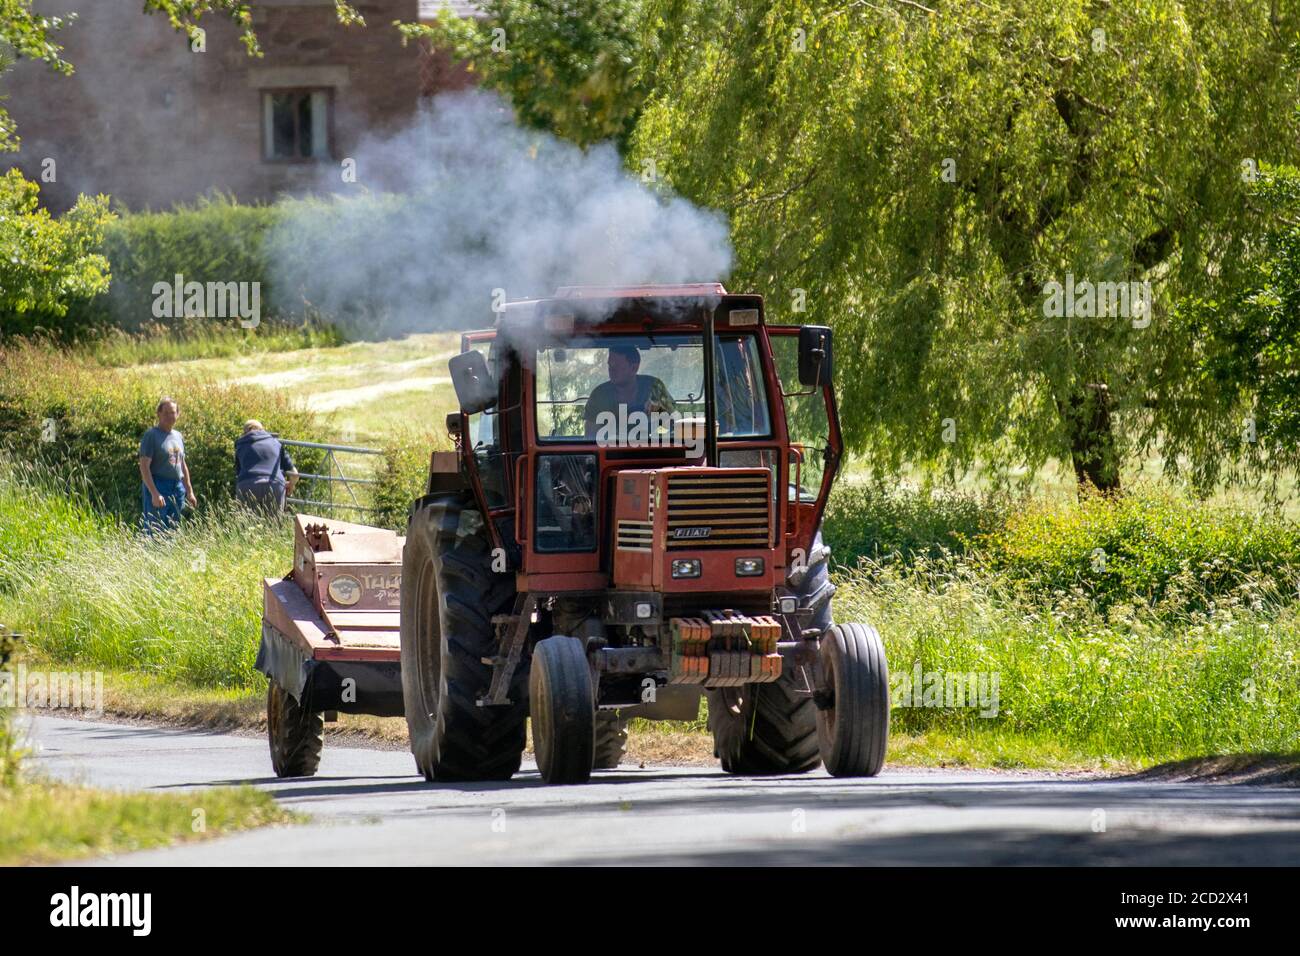 Ancien tracteur Fiat Trattori roulant sur des routes rurales avec des émissions de fumée et une remorque, Manchester, Royaume-Uni Banque D'Images